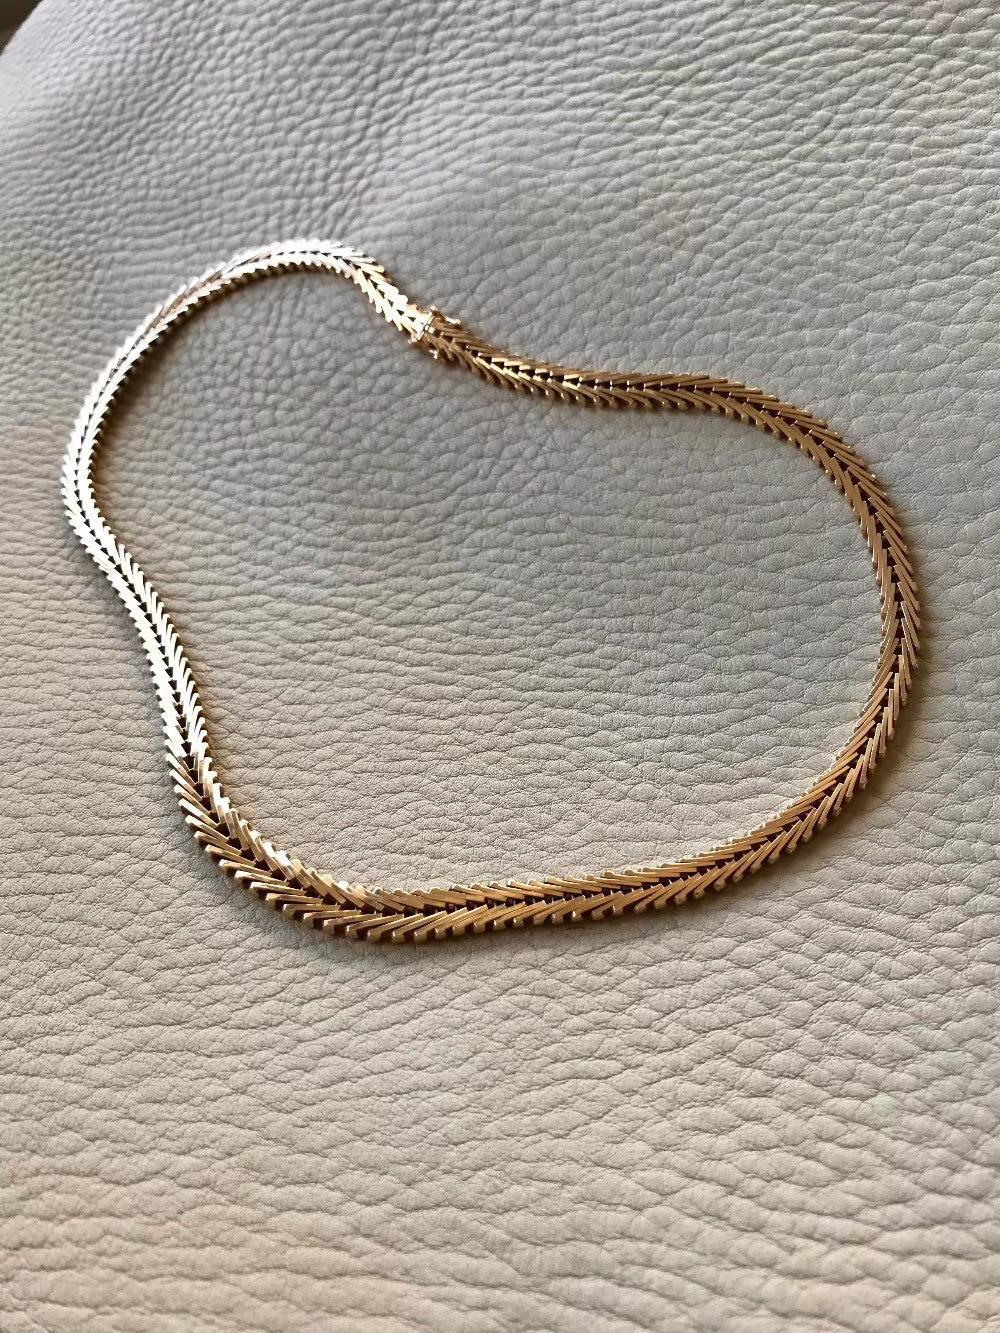 vintage 18k gold geneva link necklace